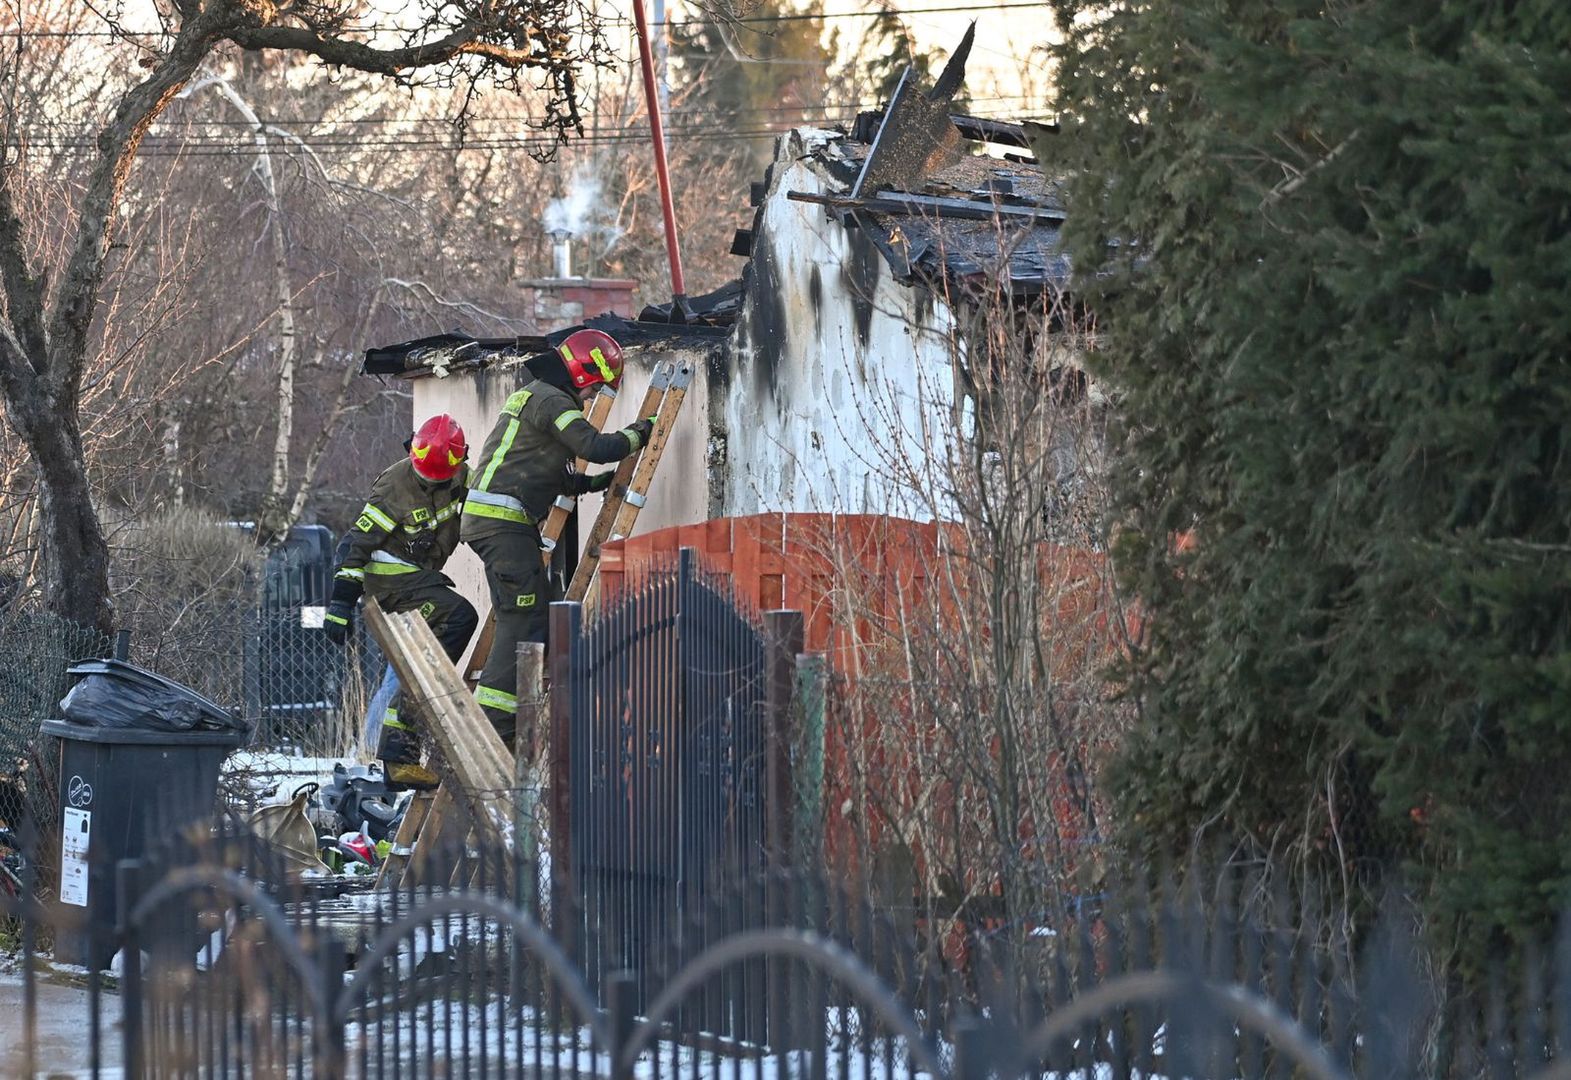 Tragedia w Gdańsku. Dwoje dzieci zginęło w pożarze. Przejmująca prośba bliskich rodziny